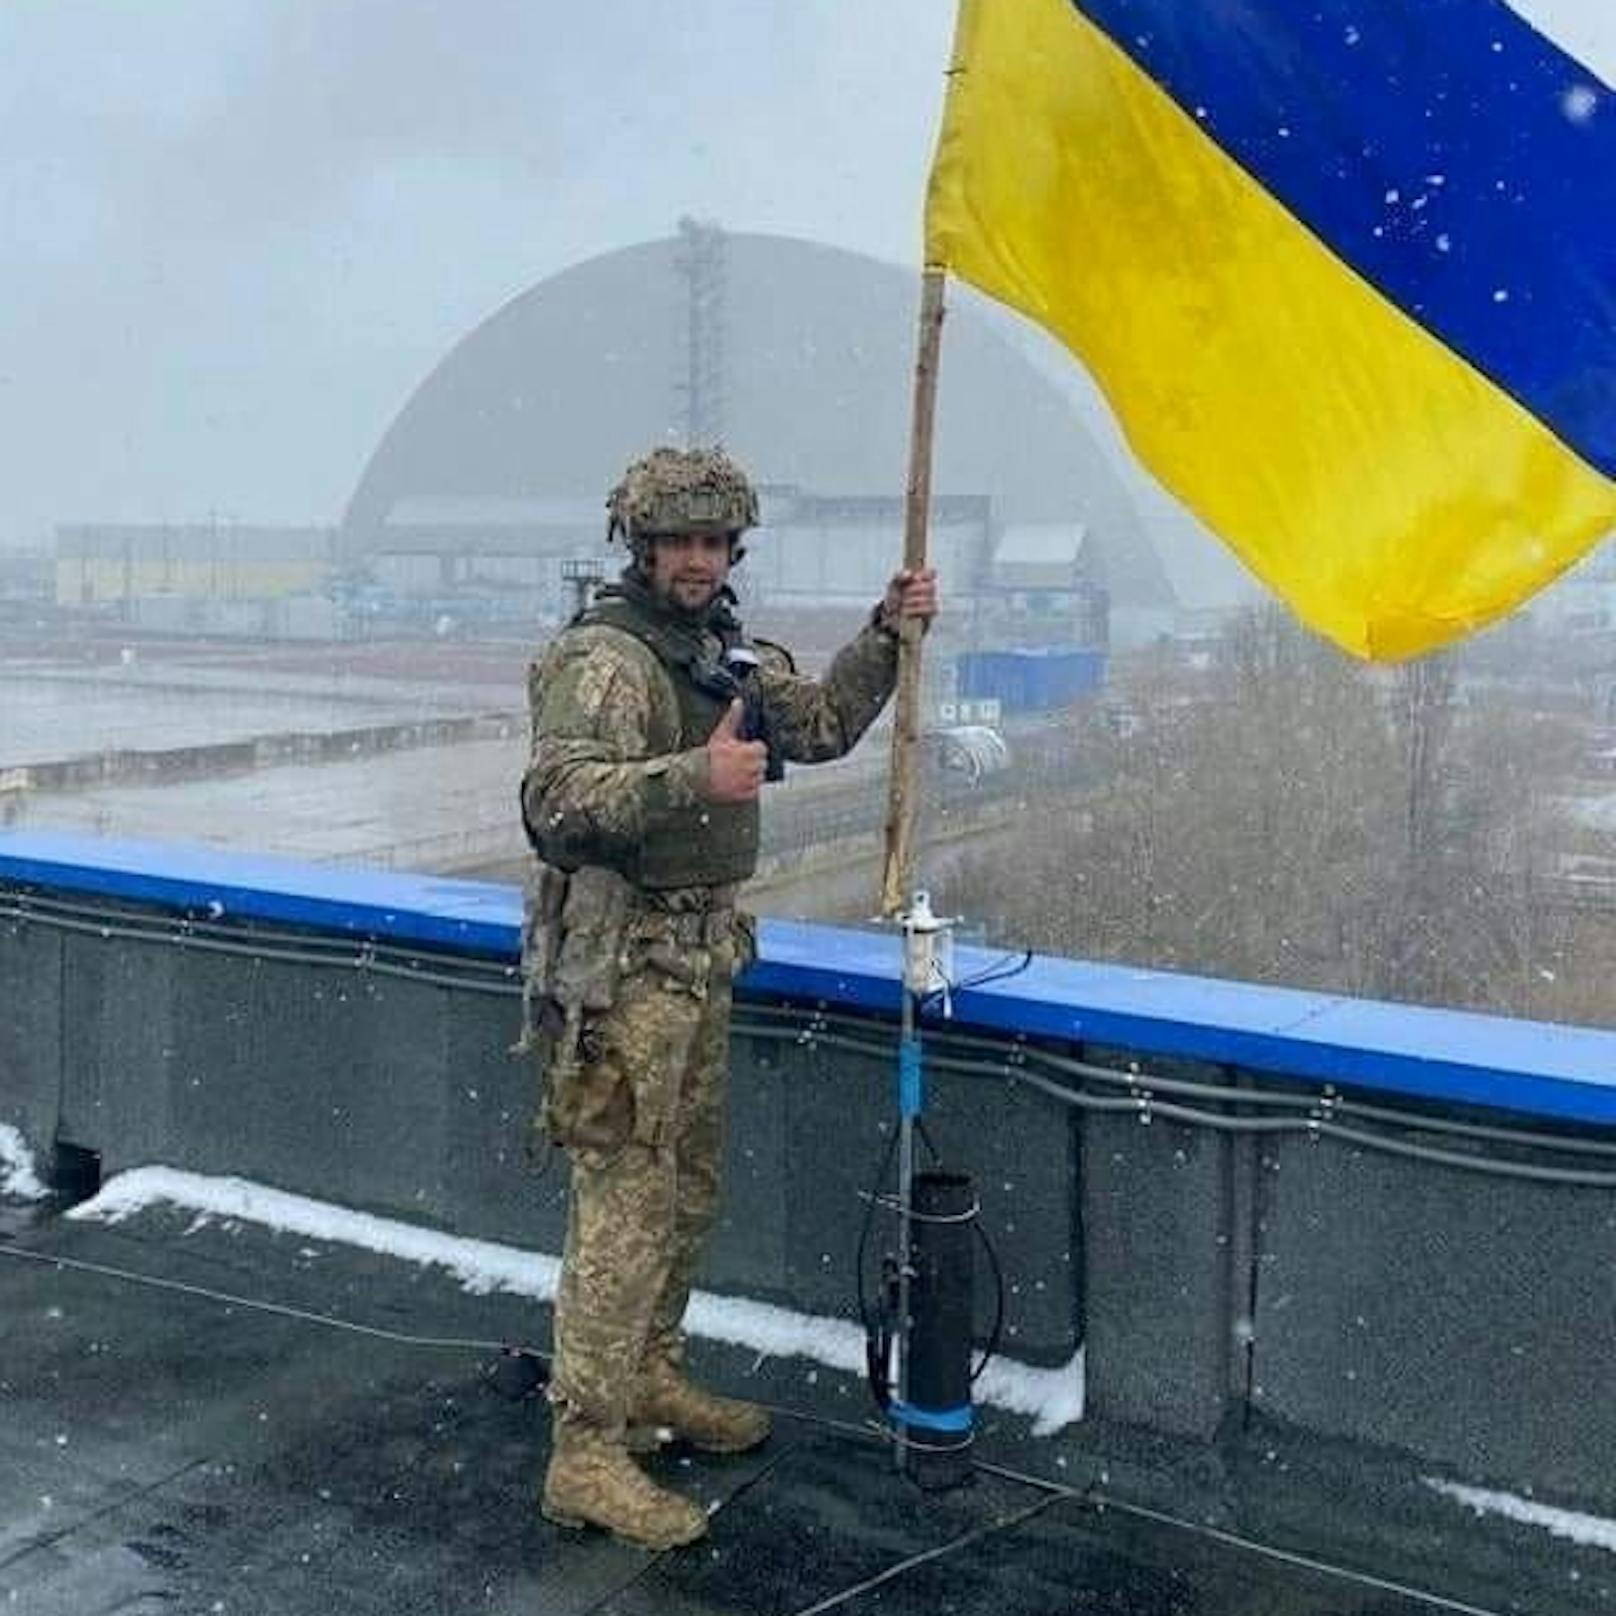 Ein fröhlicher Soldaten samt ukrainischen Flagge und Daumen-hoch-Pose vor dem rückeroberten AKW Tschernobyl.